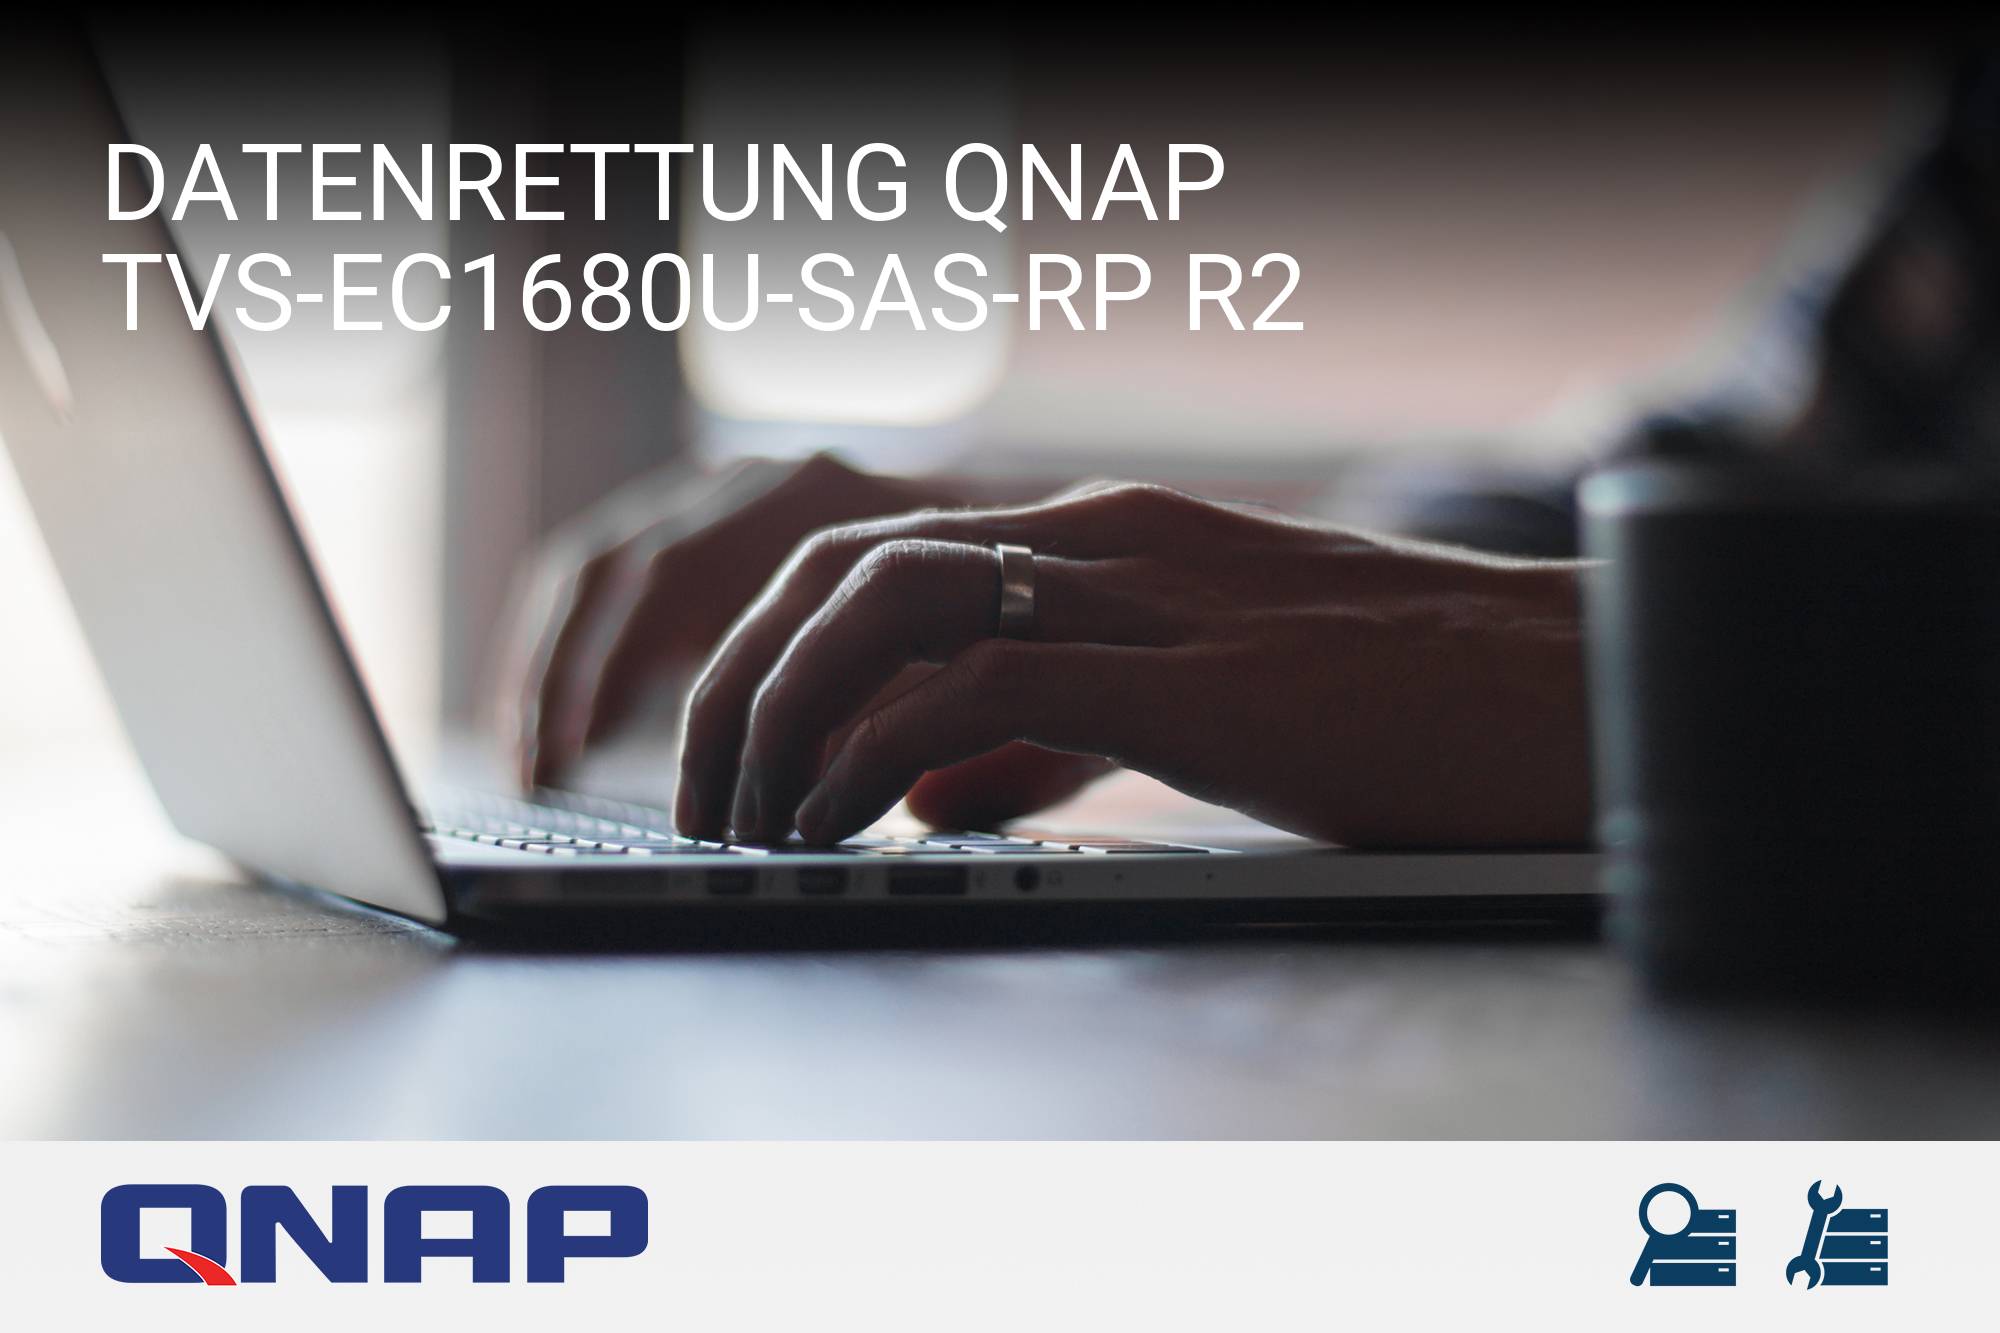 QNAP TVS-EC1680U-SAS-RP R2